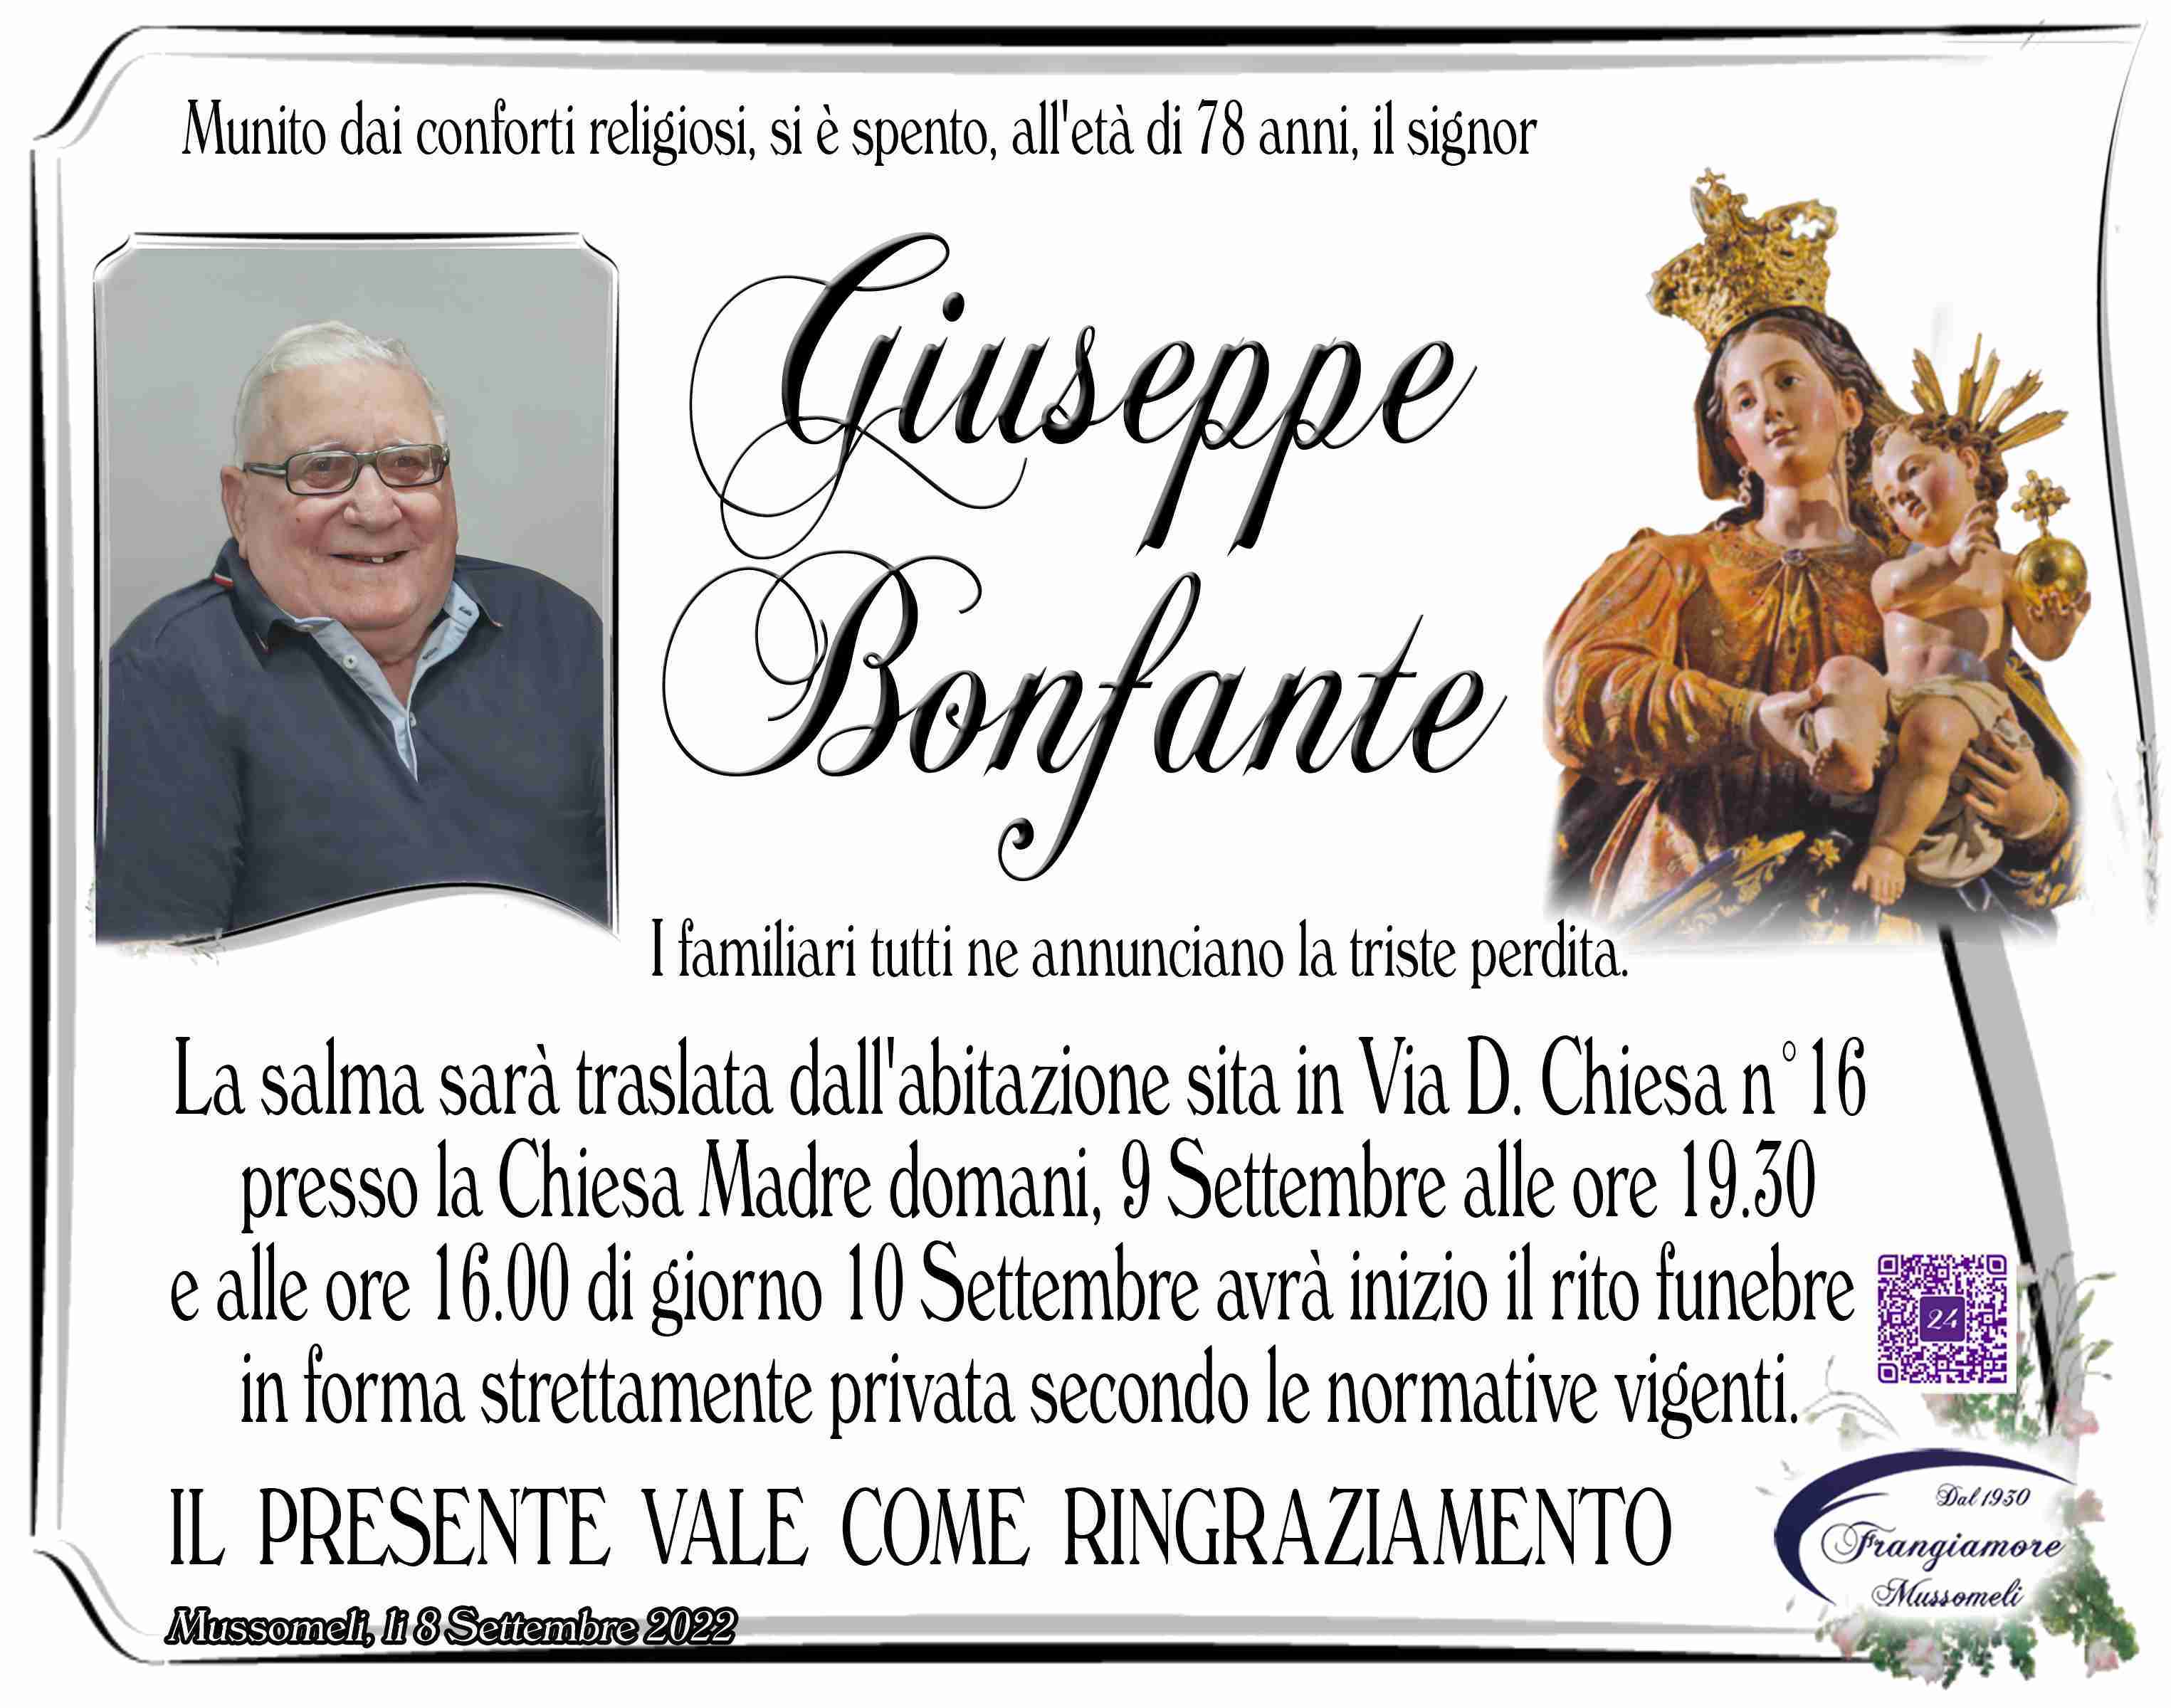 Giuseppe Bonfante